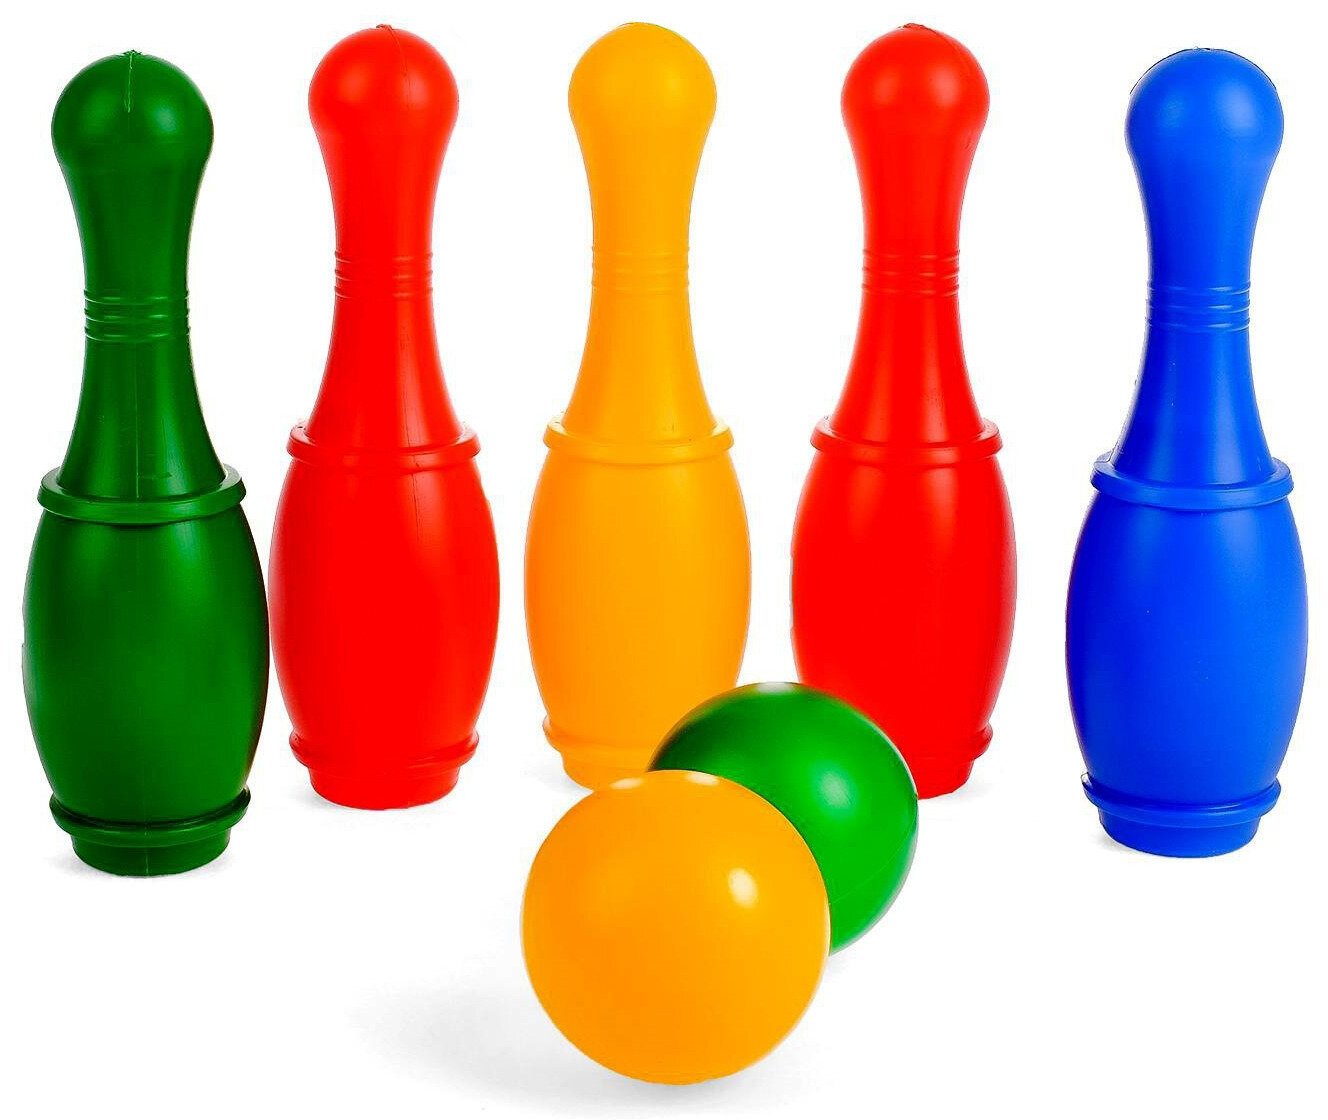 Цветной боулинг "Набор 34", детский игровой набор из 5 пластиковых кеглей и 2 шаров